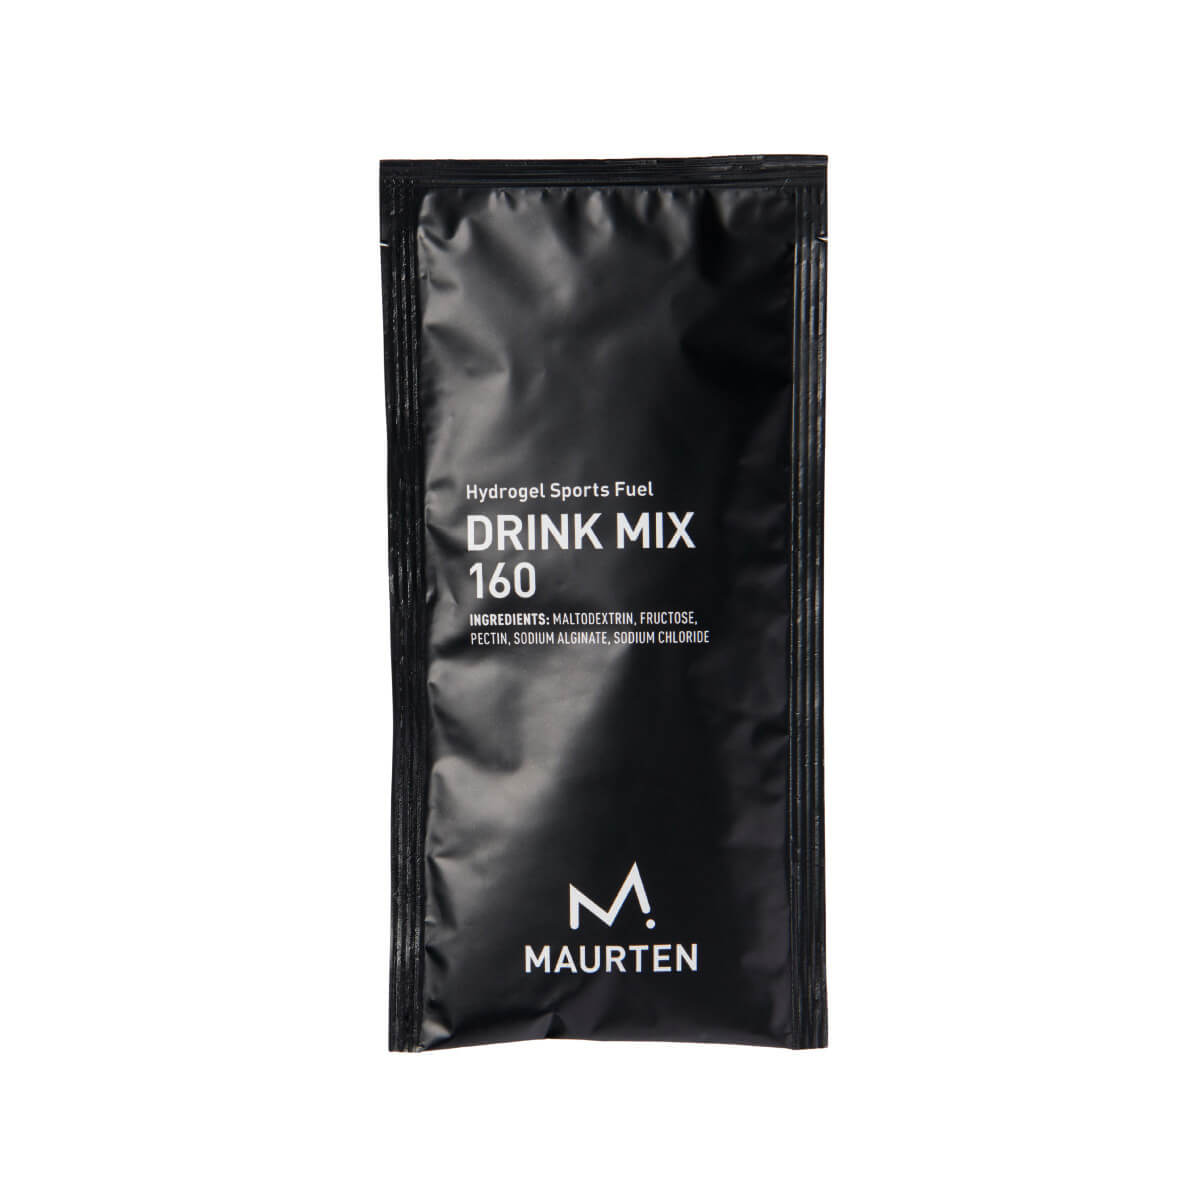 MAURETN DRINK MIX 160 1袋40g ドリンクミックス 粉末スポーツドリンク 商品イメージ